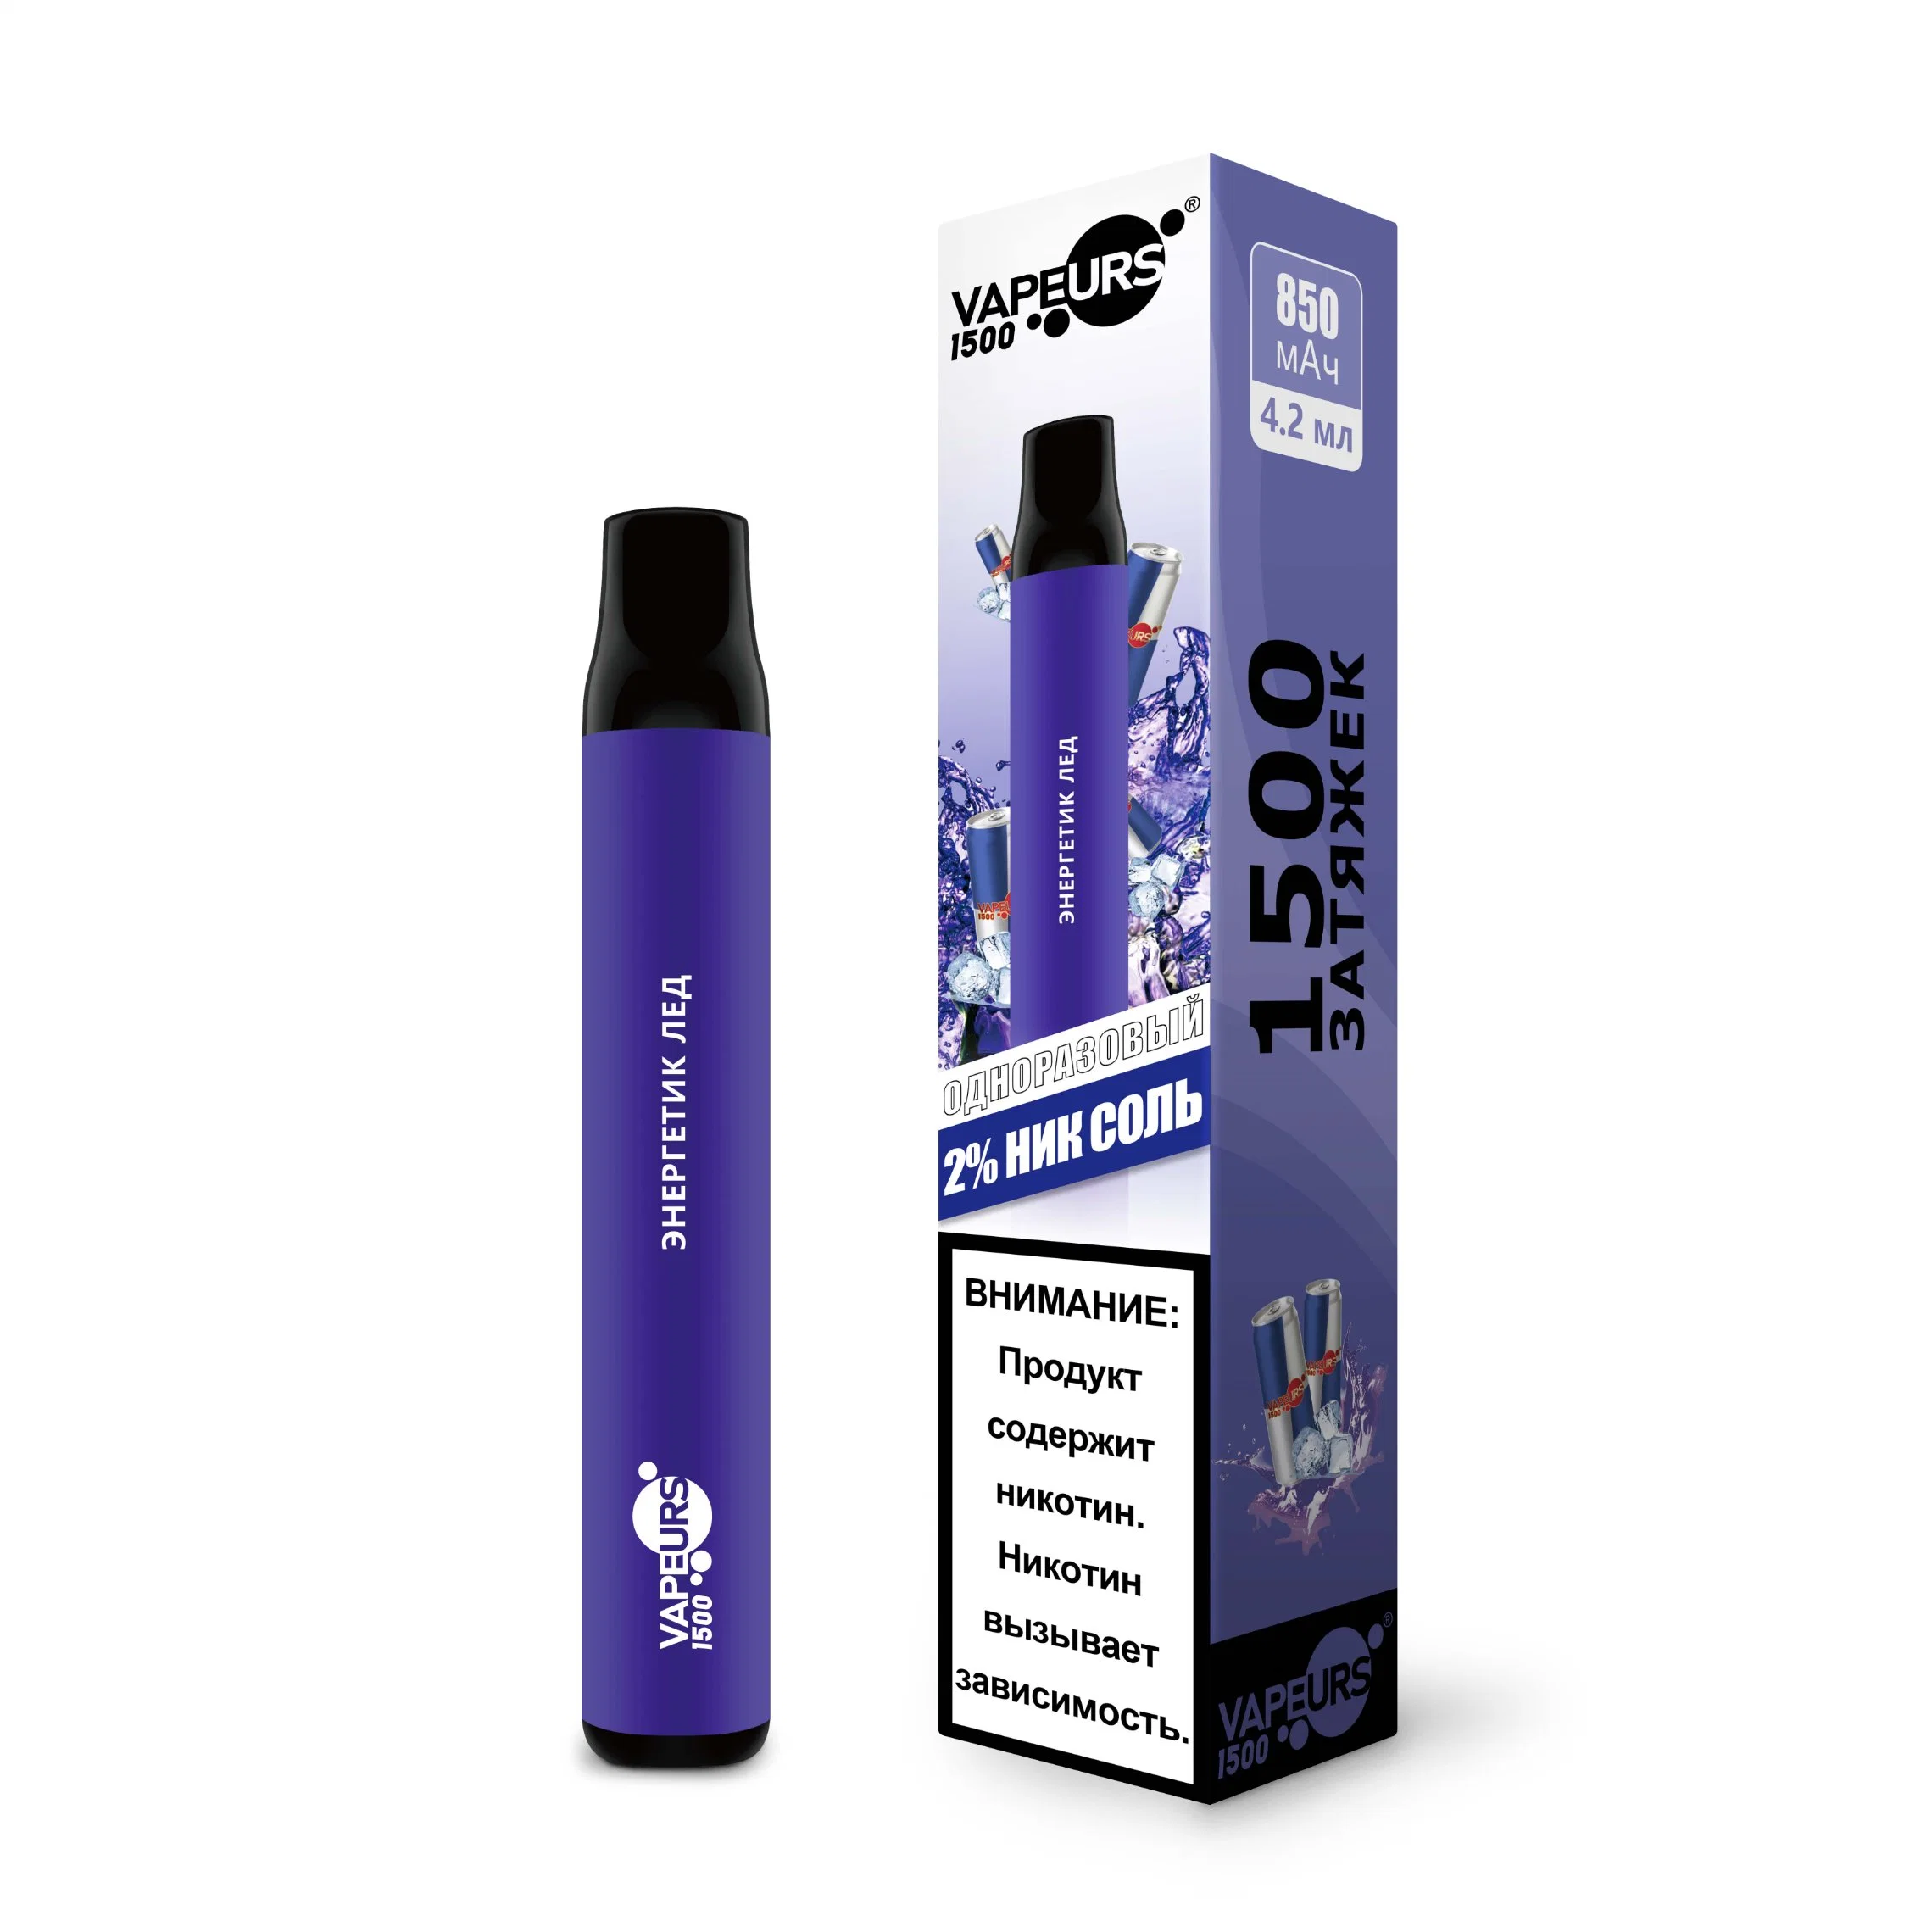 Nuevo cigarrillo electrónico Electric Eshisha ODM OEM de fábrica en China 500 800 1500 inhalaciones Vape Pen Elektro Portable Hookah Precio